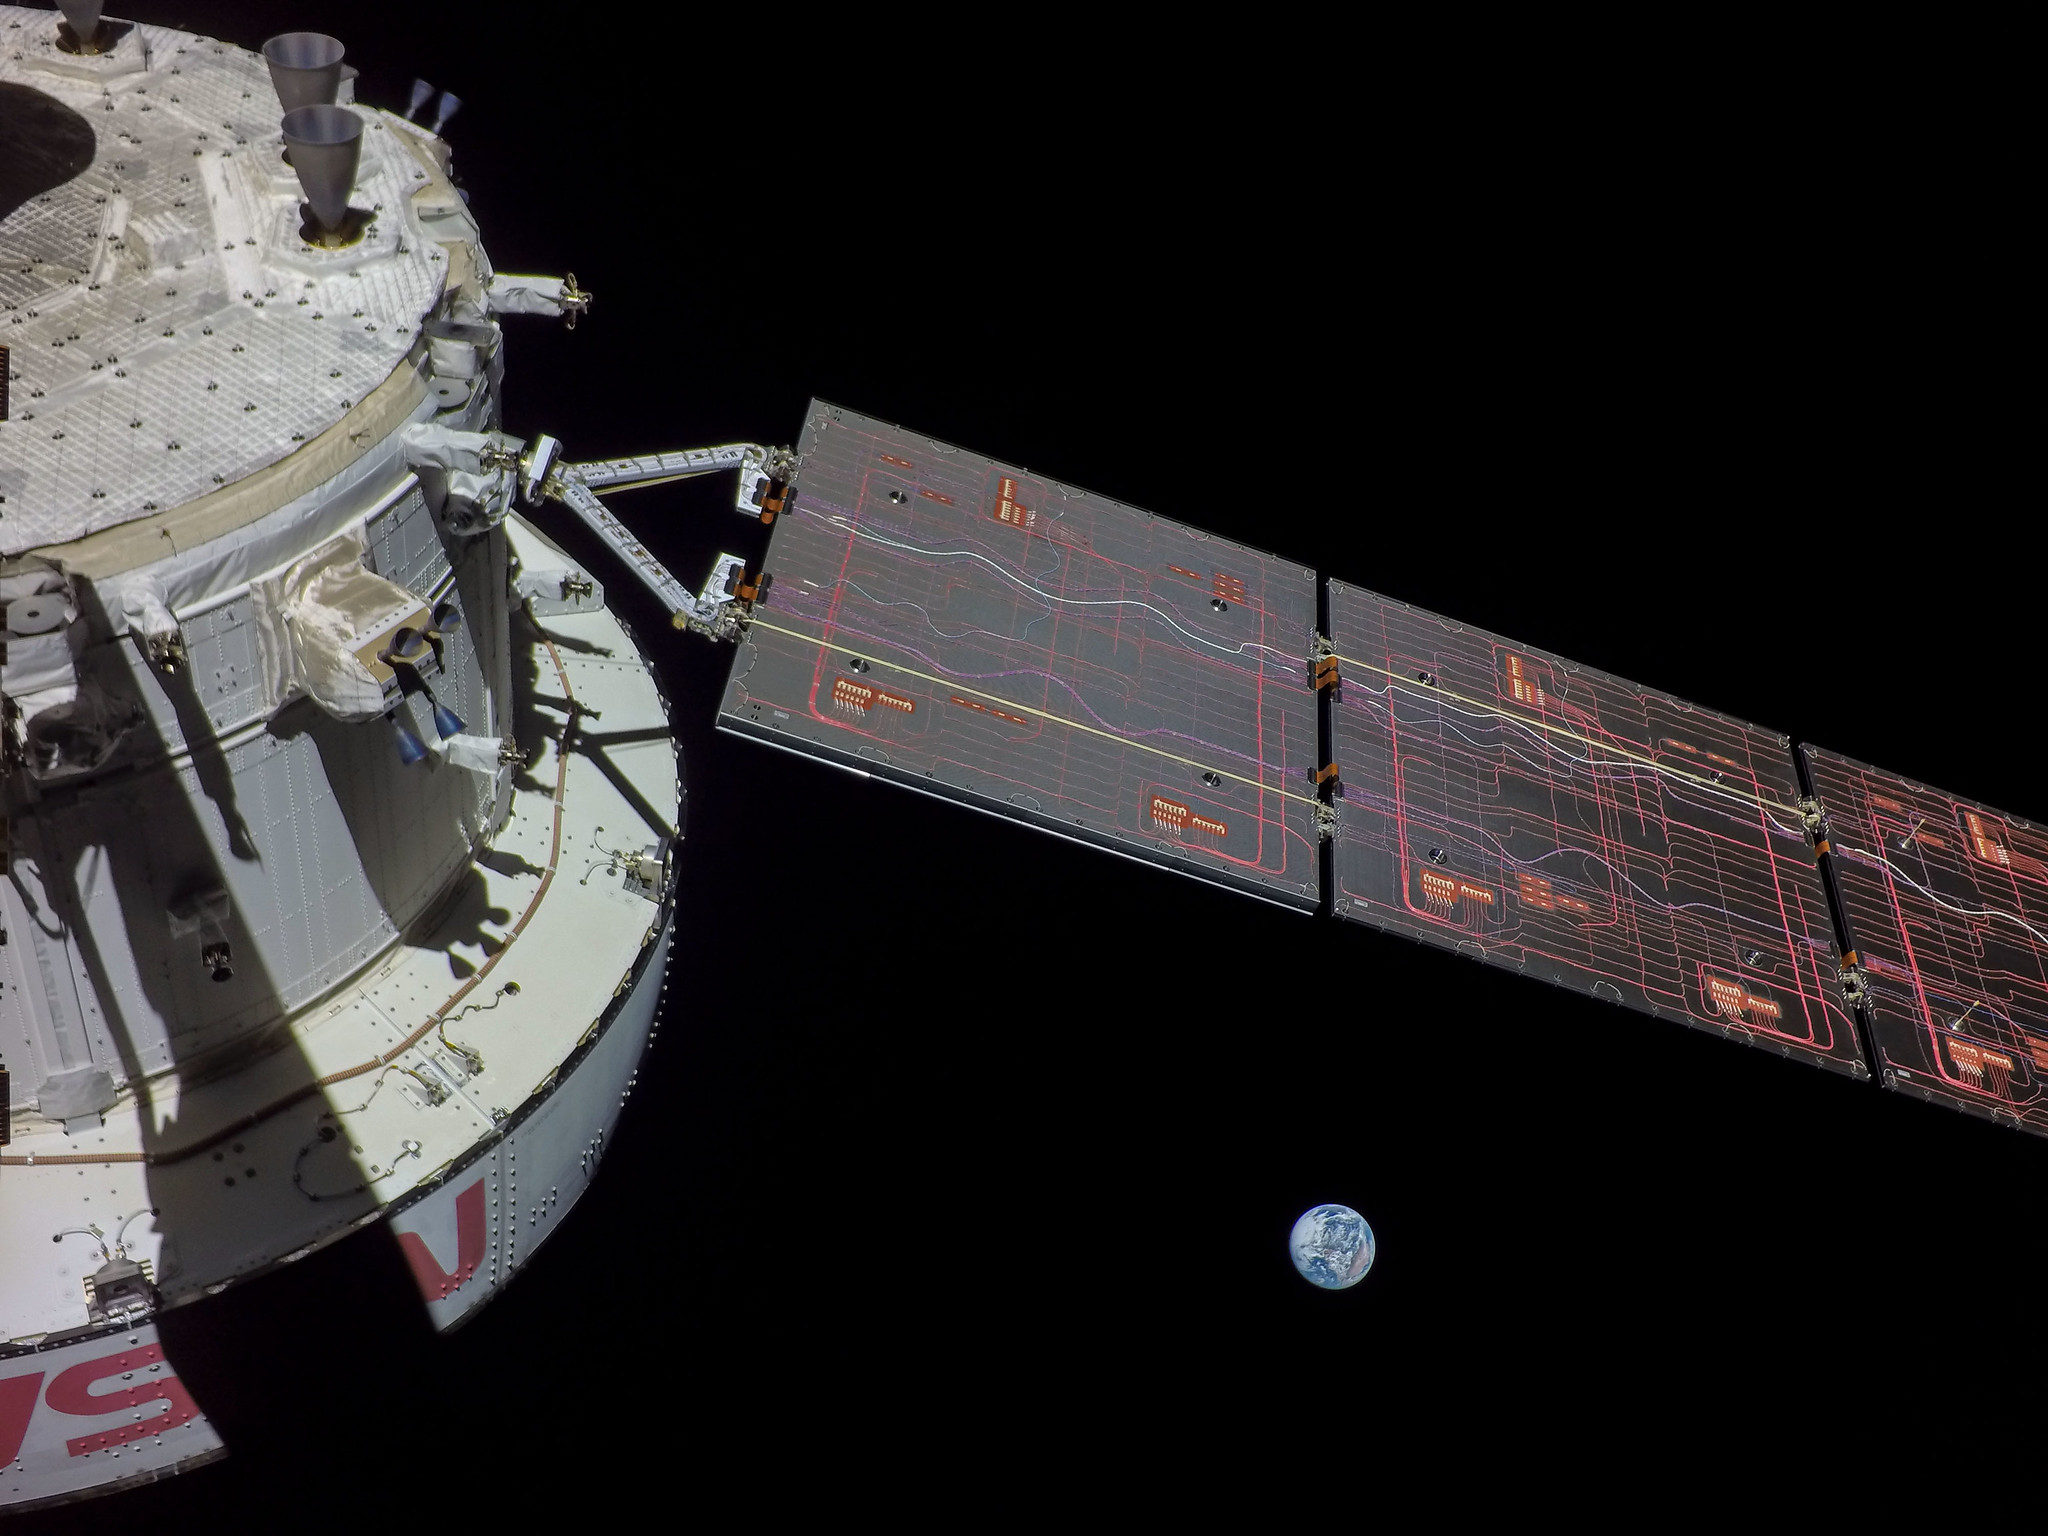 Magnifiques photos de la capsule Orion, sur son orbite avec vue sur la Terre et la Lune !